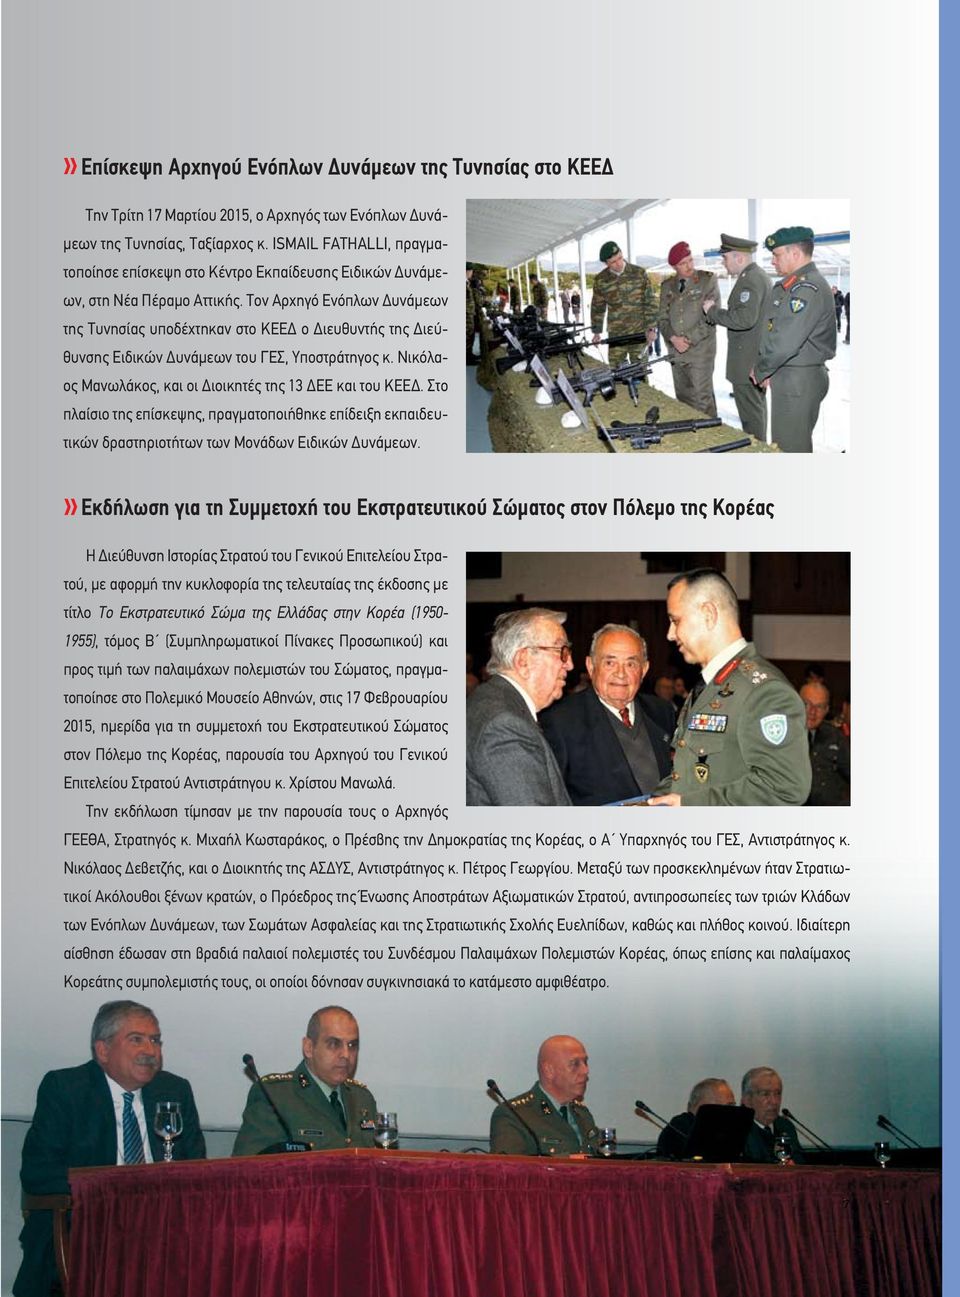 Τον Αρχηγό Ενόπλων Δυνάμεων της Τυνησίας υποδέχτηκαν στο ΚΕΕΔ ο Διευθυντής της Διεύθυνσης Ειδικών Δυνάμεων του ΓΕΣ, Υποστράτηγος κ. Νικόλαος Μανωλάκος, και οι Διοικητές της 13 ΔΕΕ και του ΚΕΕΔ.